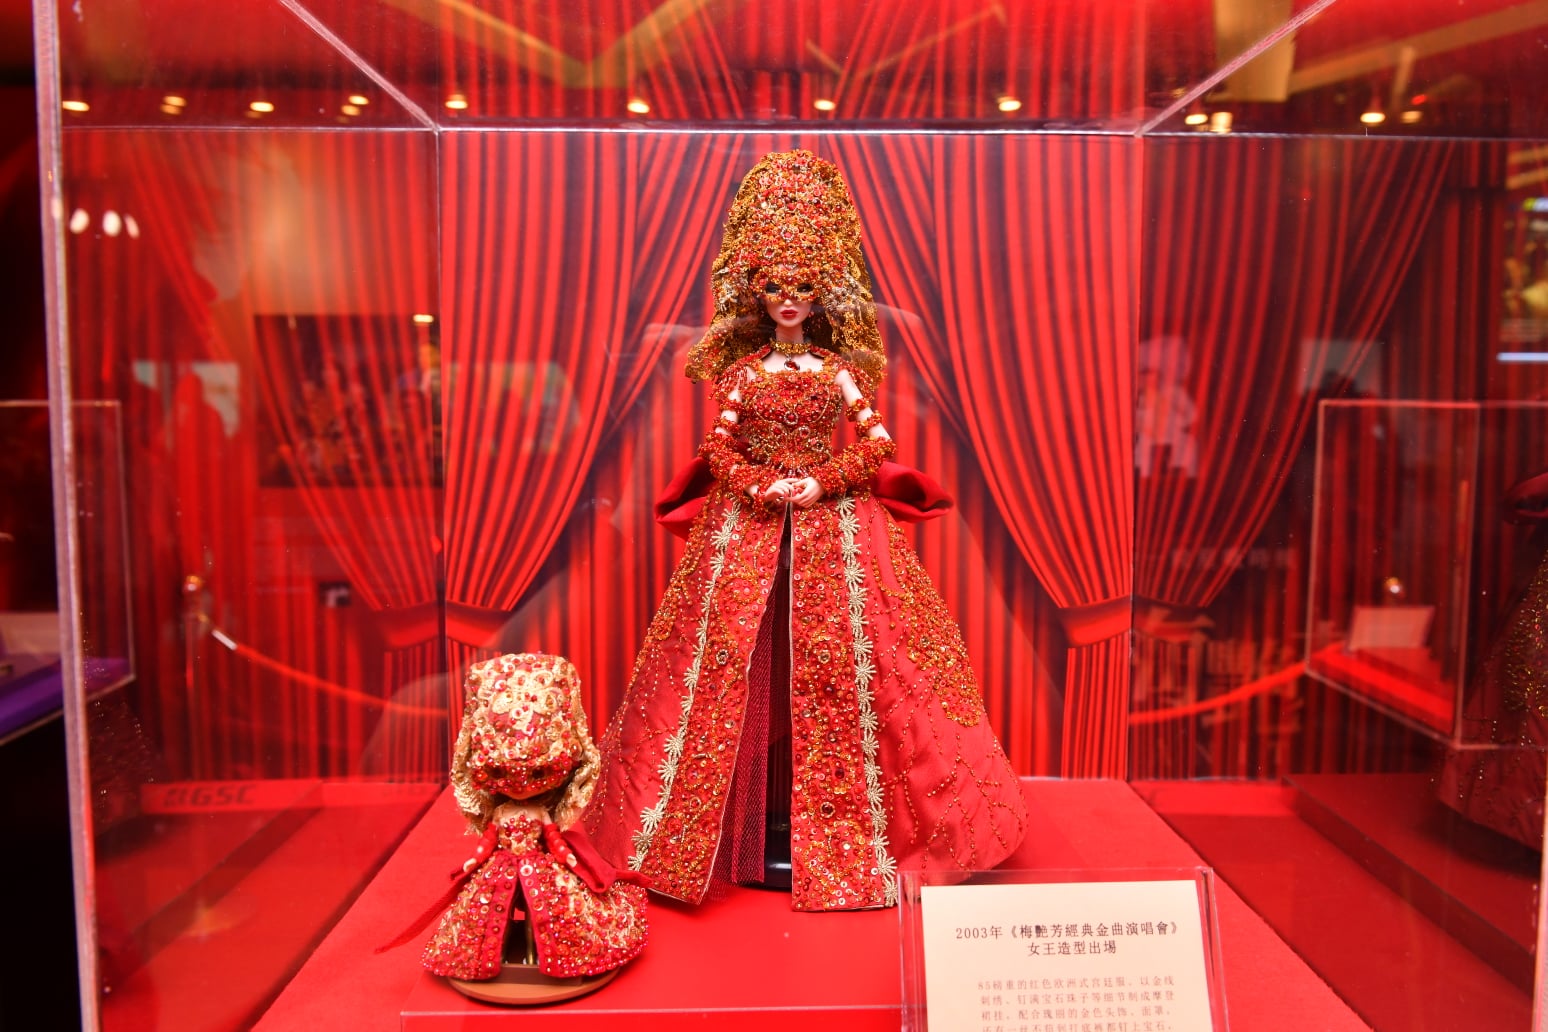 2003年的《梅艳芳经典金曲演唱会》的开场造型服饰手作娃娃。-摘自GSC脸书-